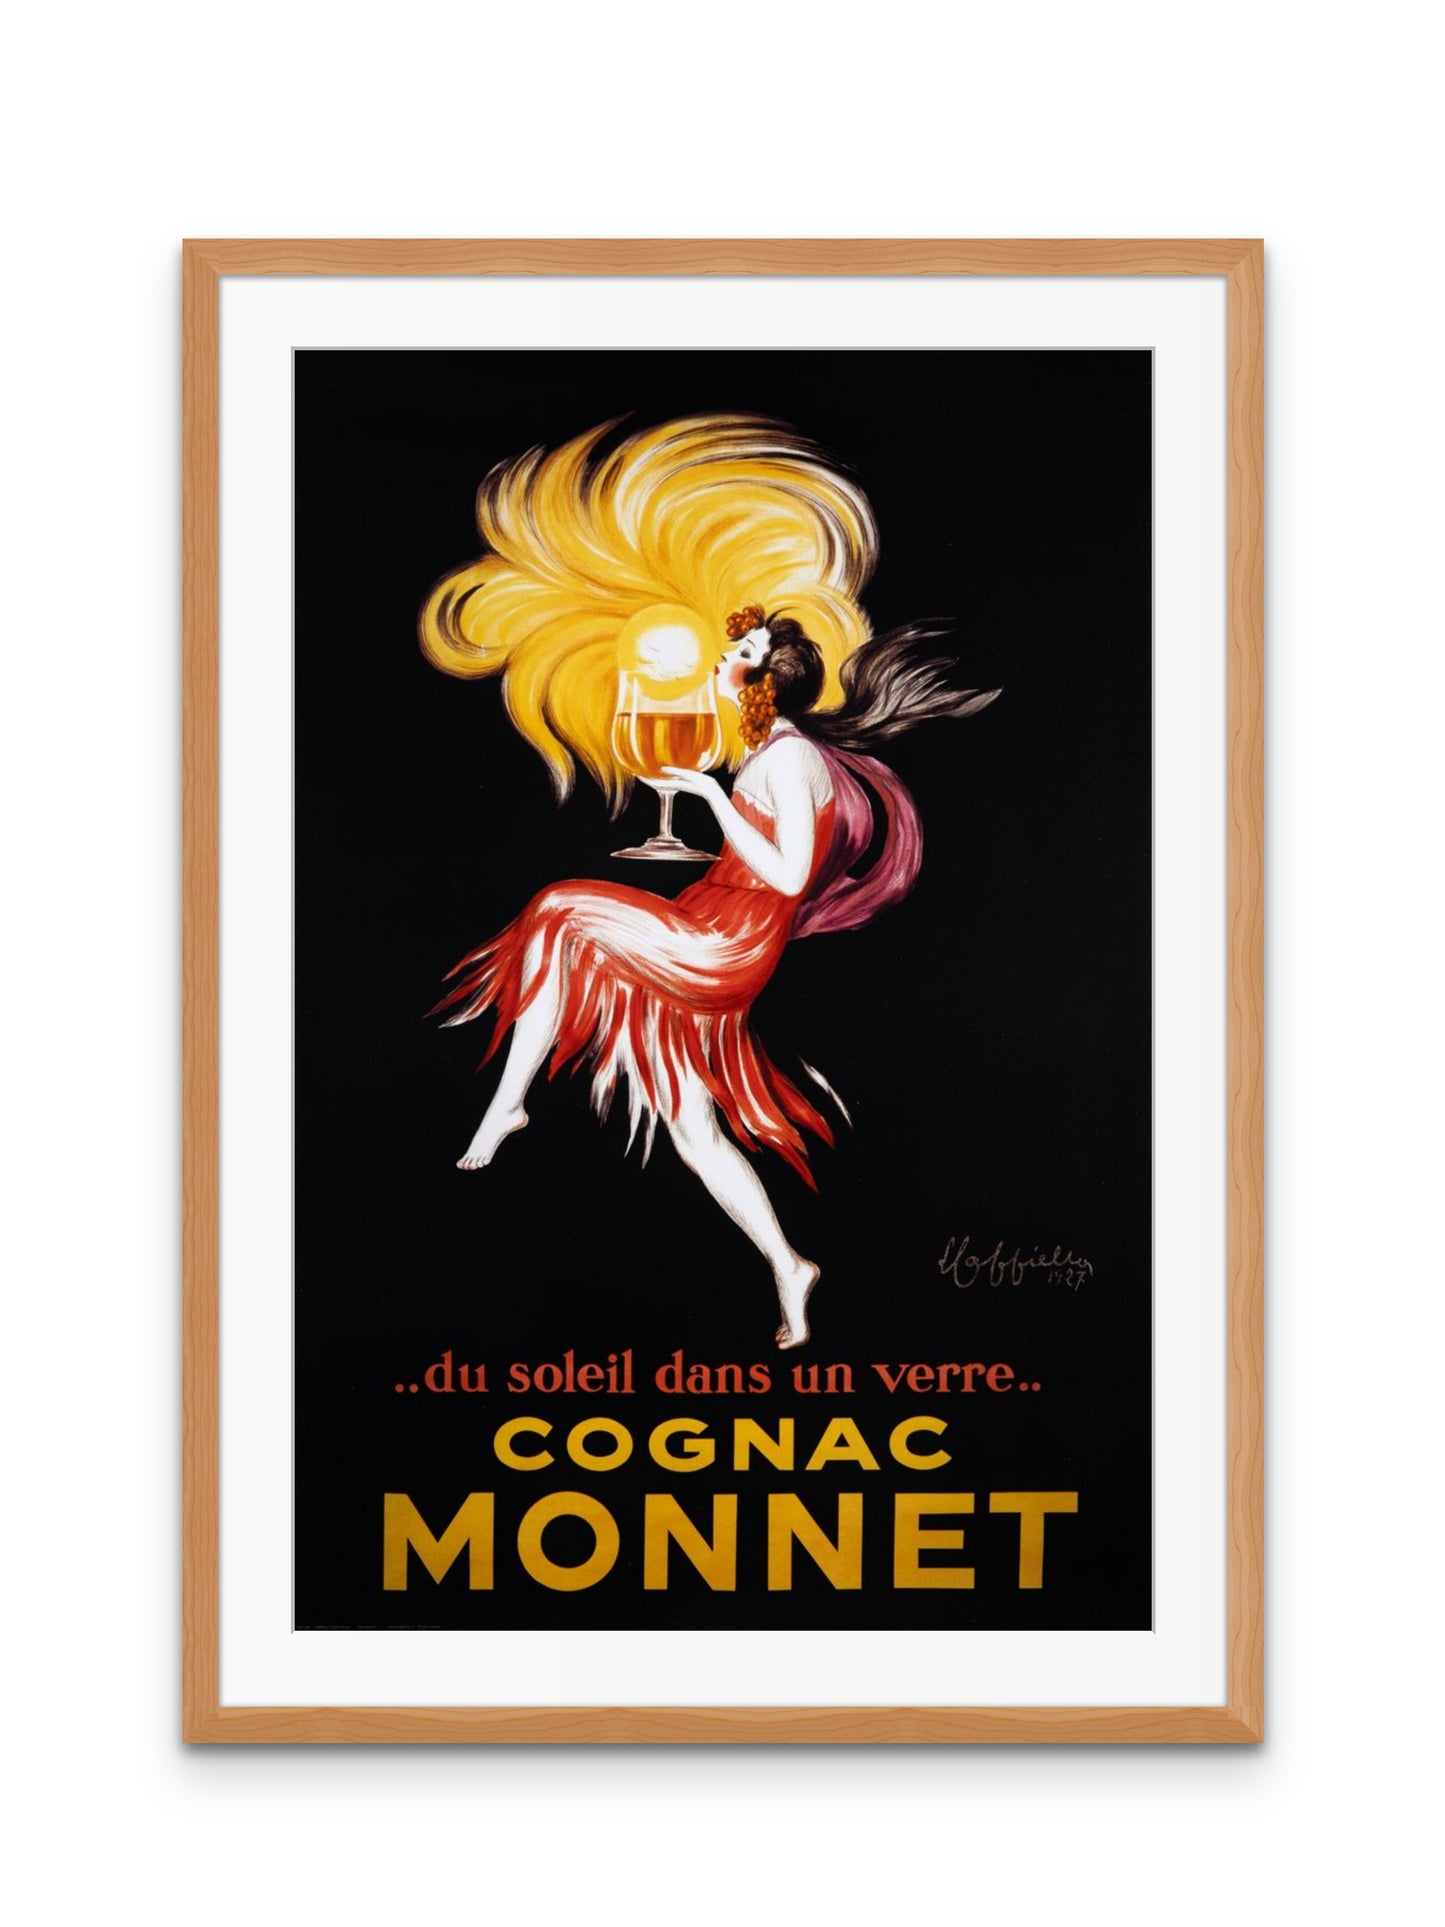 Cognac Monnet